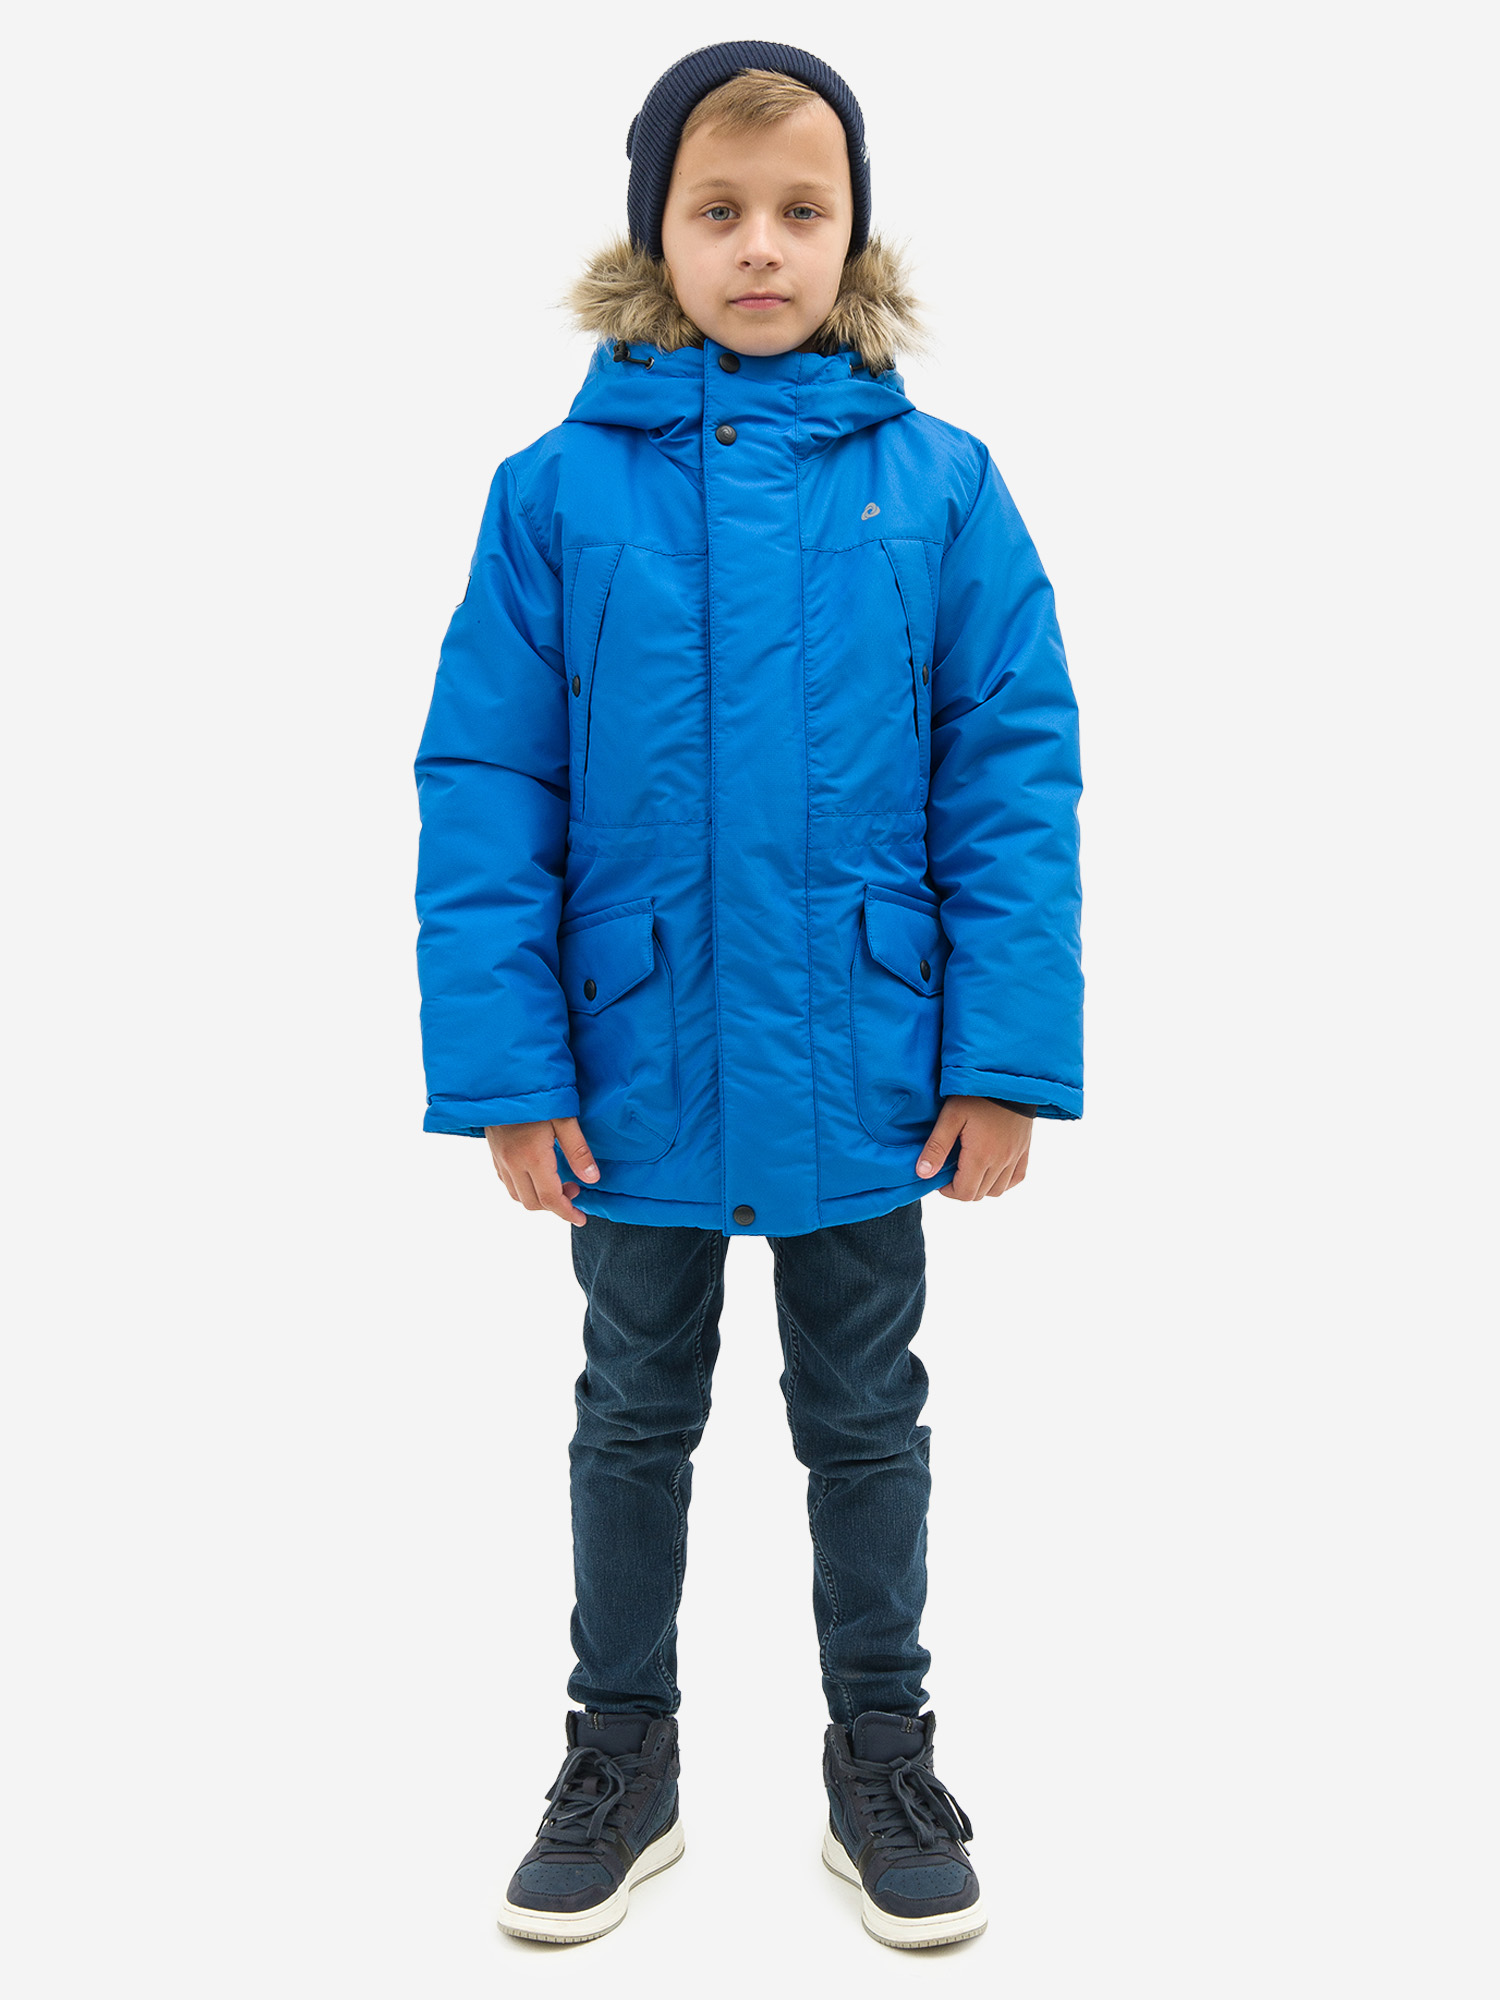 Куртка детская зимняя CosmoTex, Голубой valianly парка зимняя подростковая для мальчика 9339